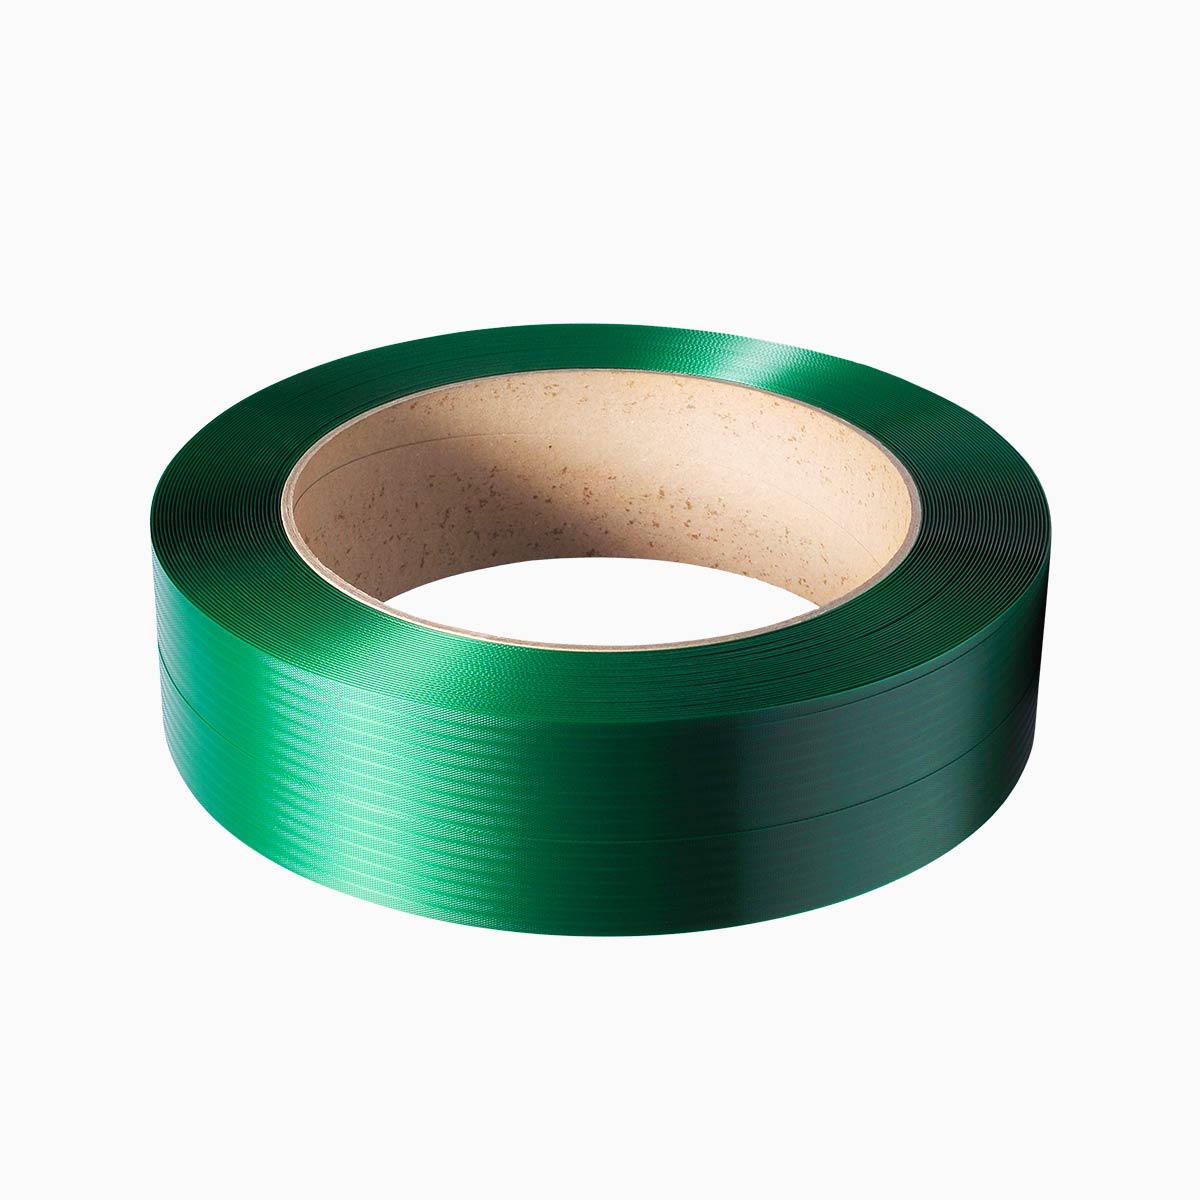 PET-Polyesterband findet überall dort Anwendung, wo es notwendig ist, die Ware selbst zu binden.